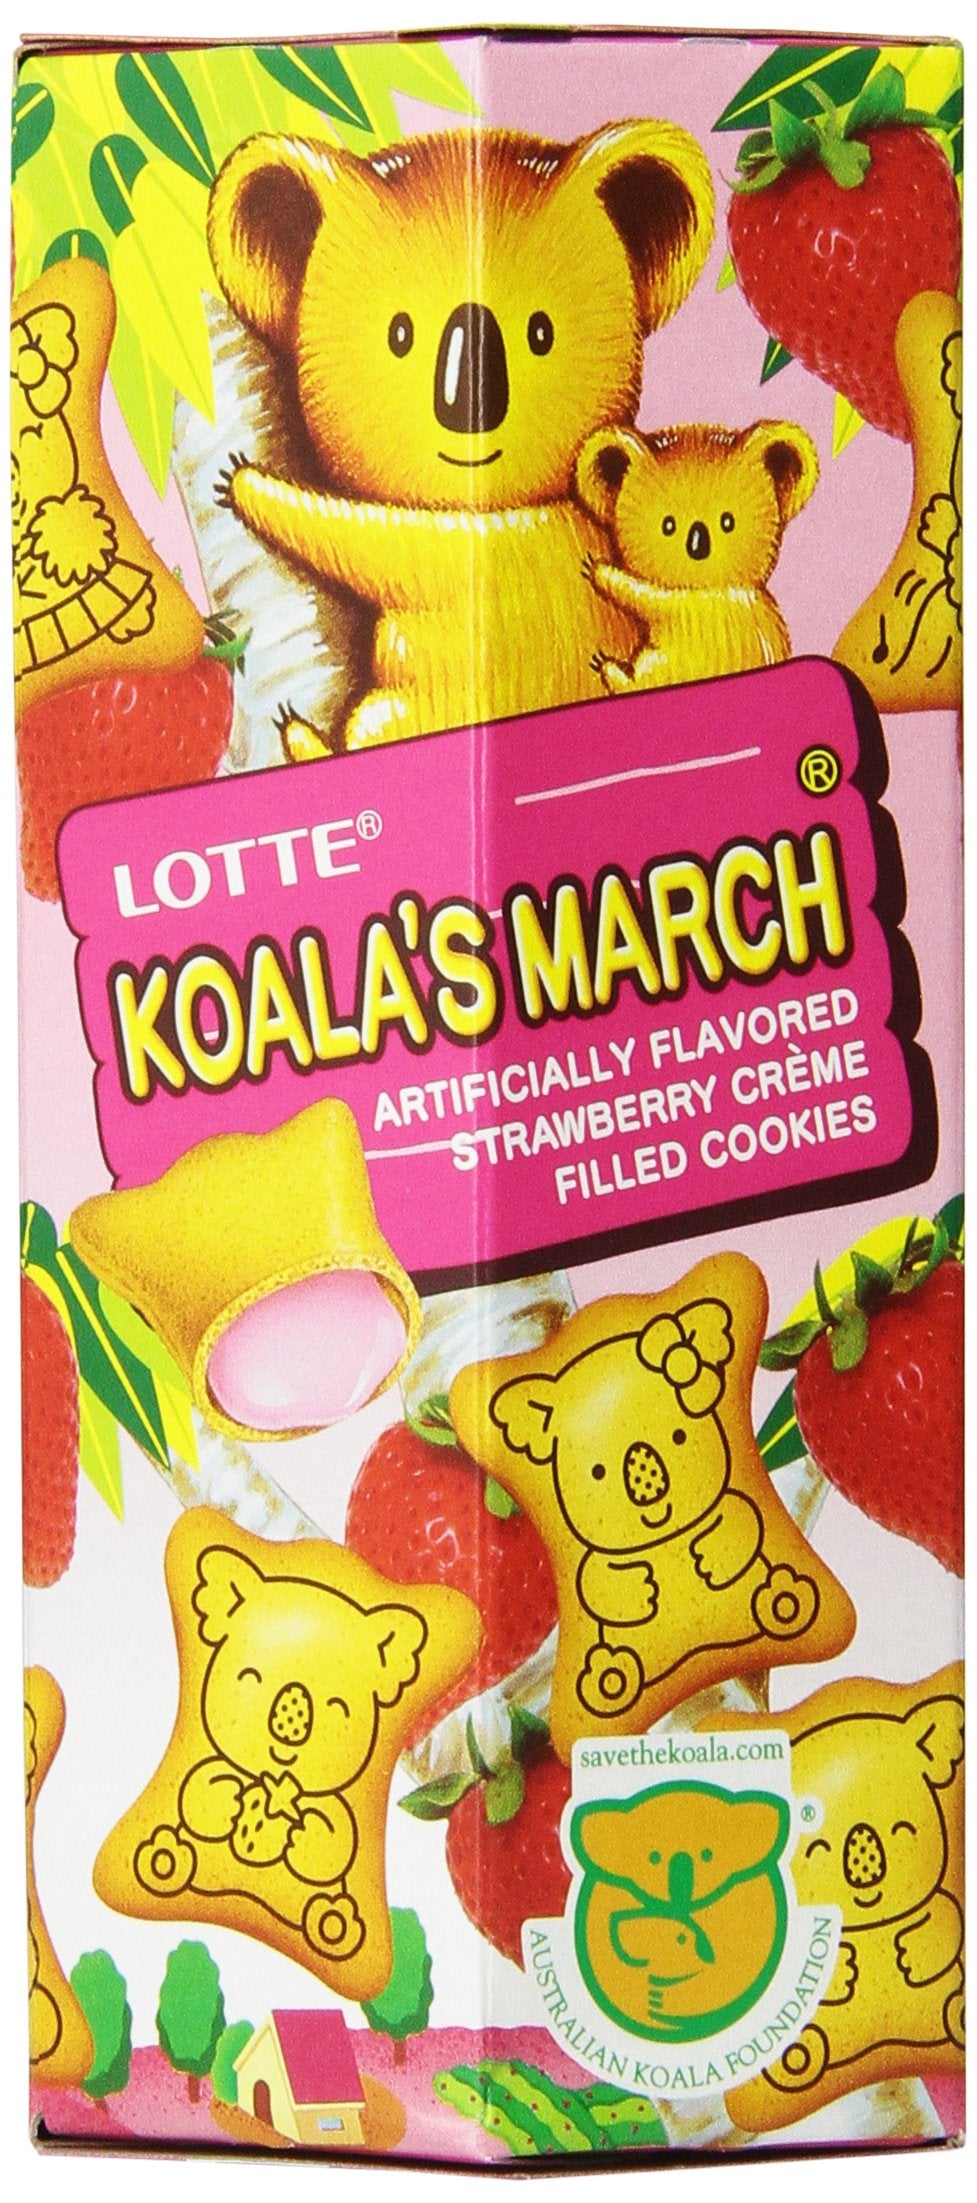 Lotte av2023-Lotte-lotte koalas march cookie with-d58d97f8